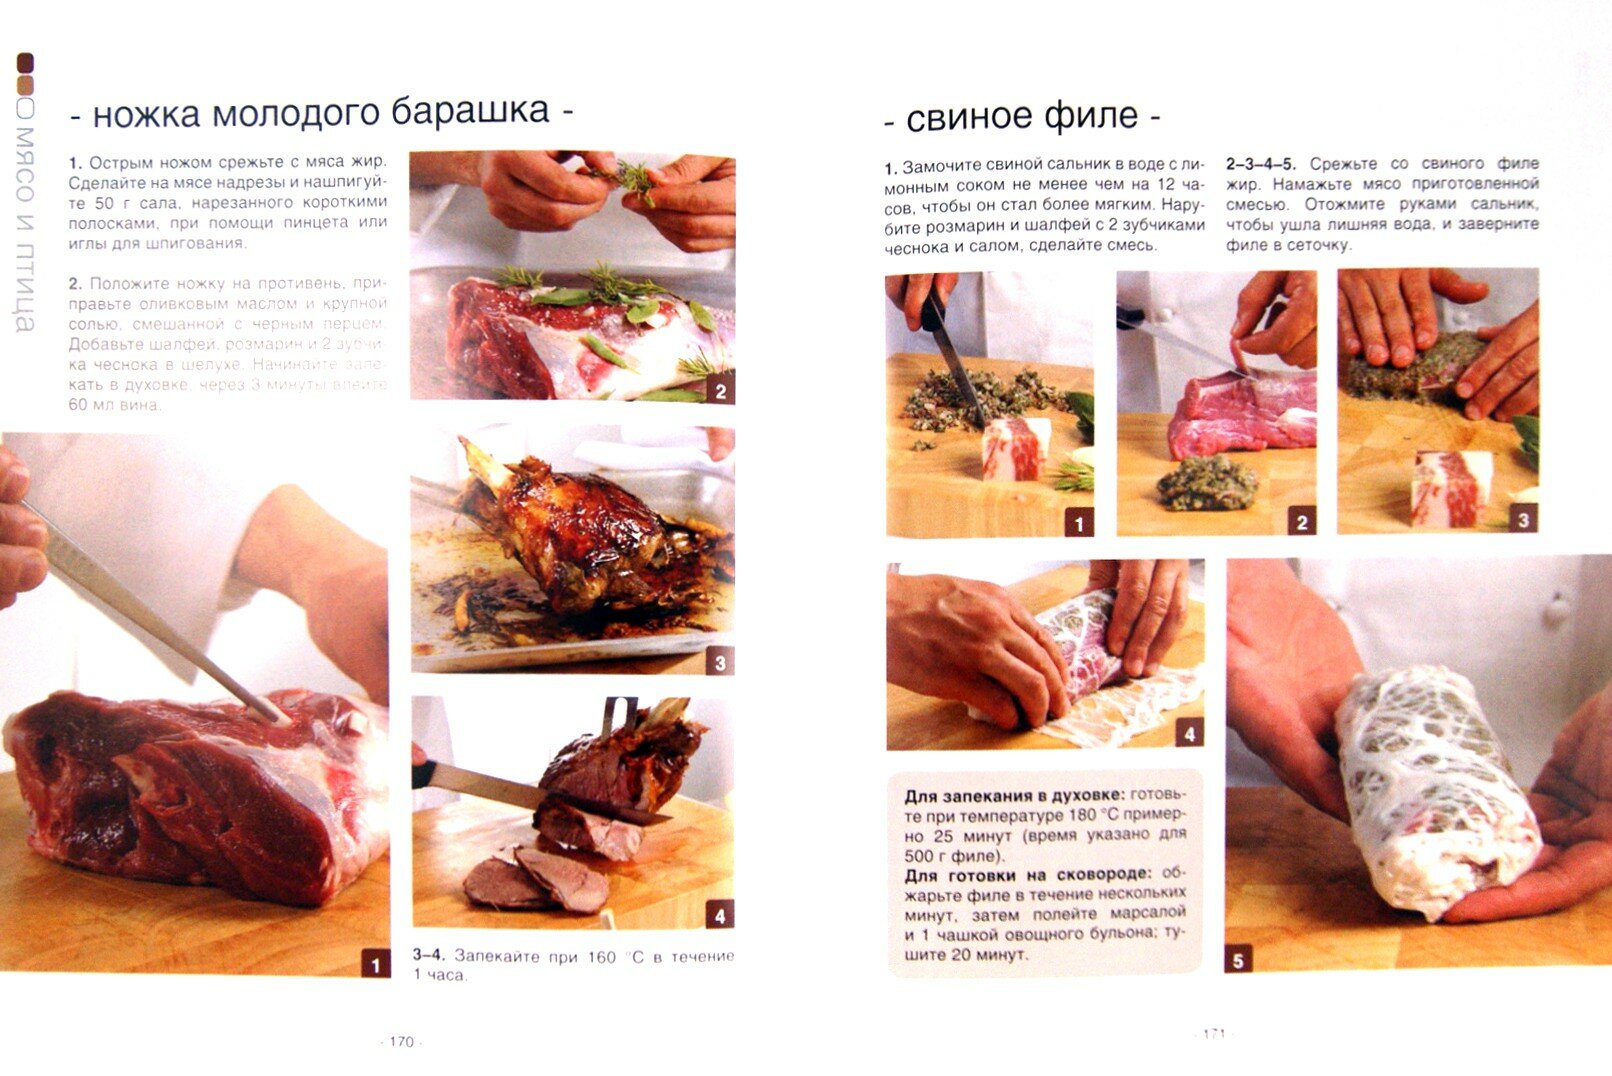 Школа кулинарного мастерства. Инструменты, кулинарные приемы и базовые рецепты - фото №5